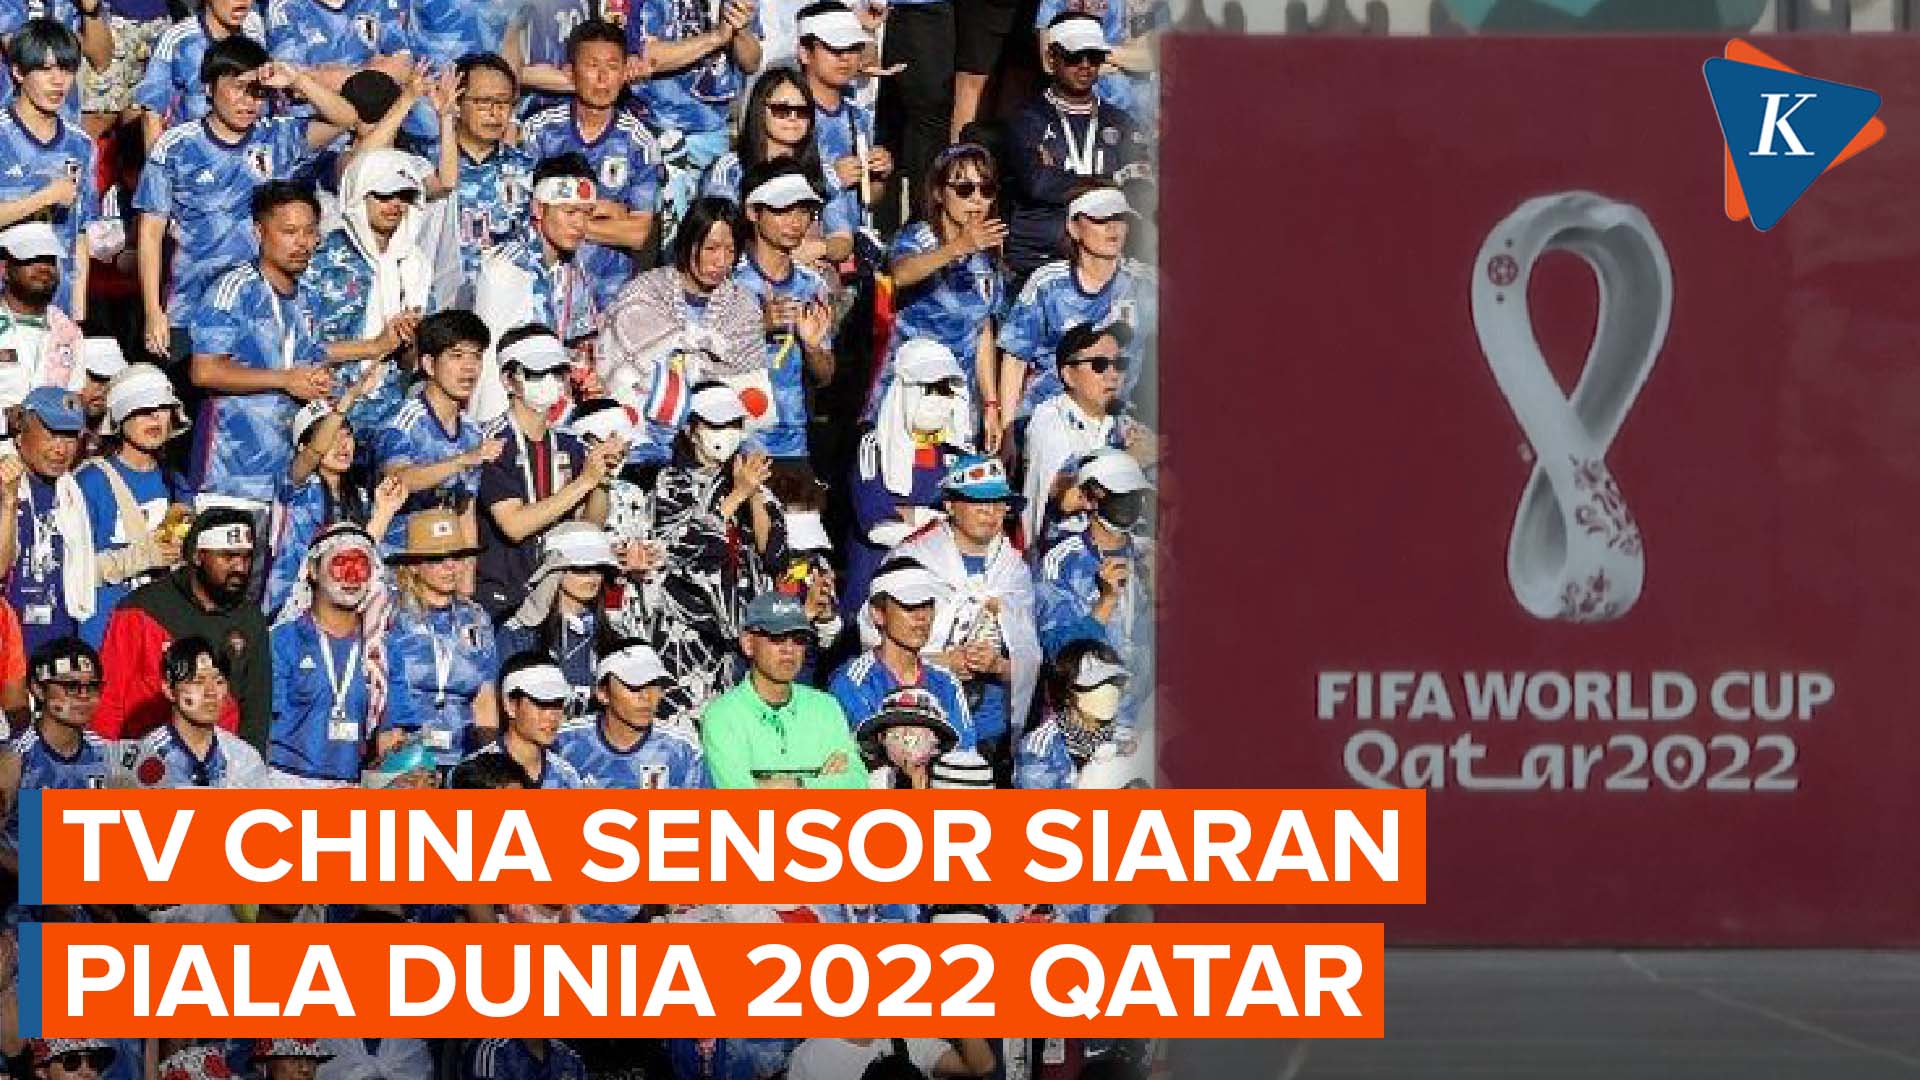 TV China Sensor Siaran Piala Dunia Qatar, Adegan Penonton Tanpa Masker Dihilangkan